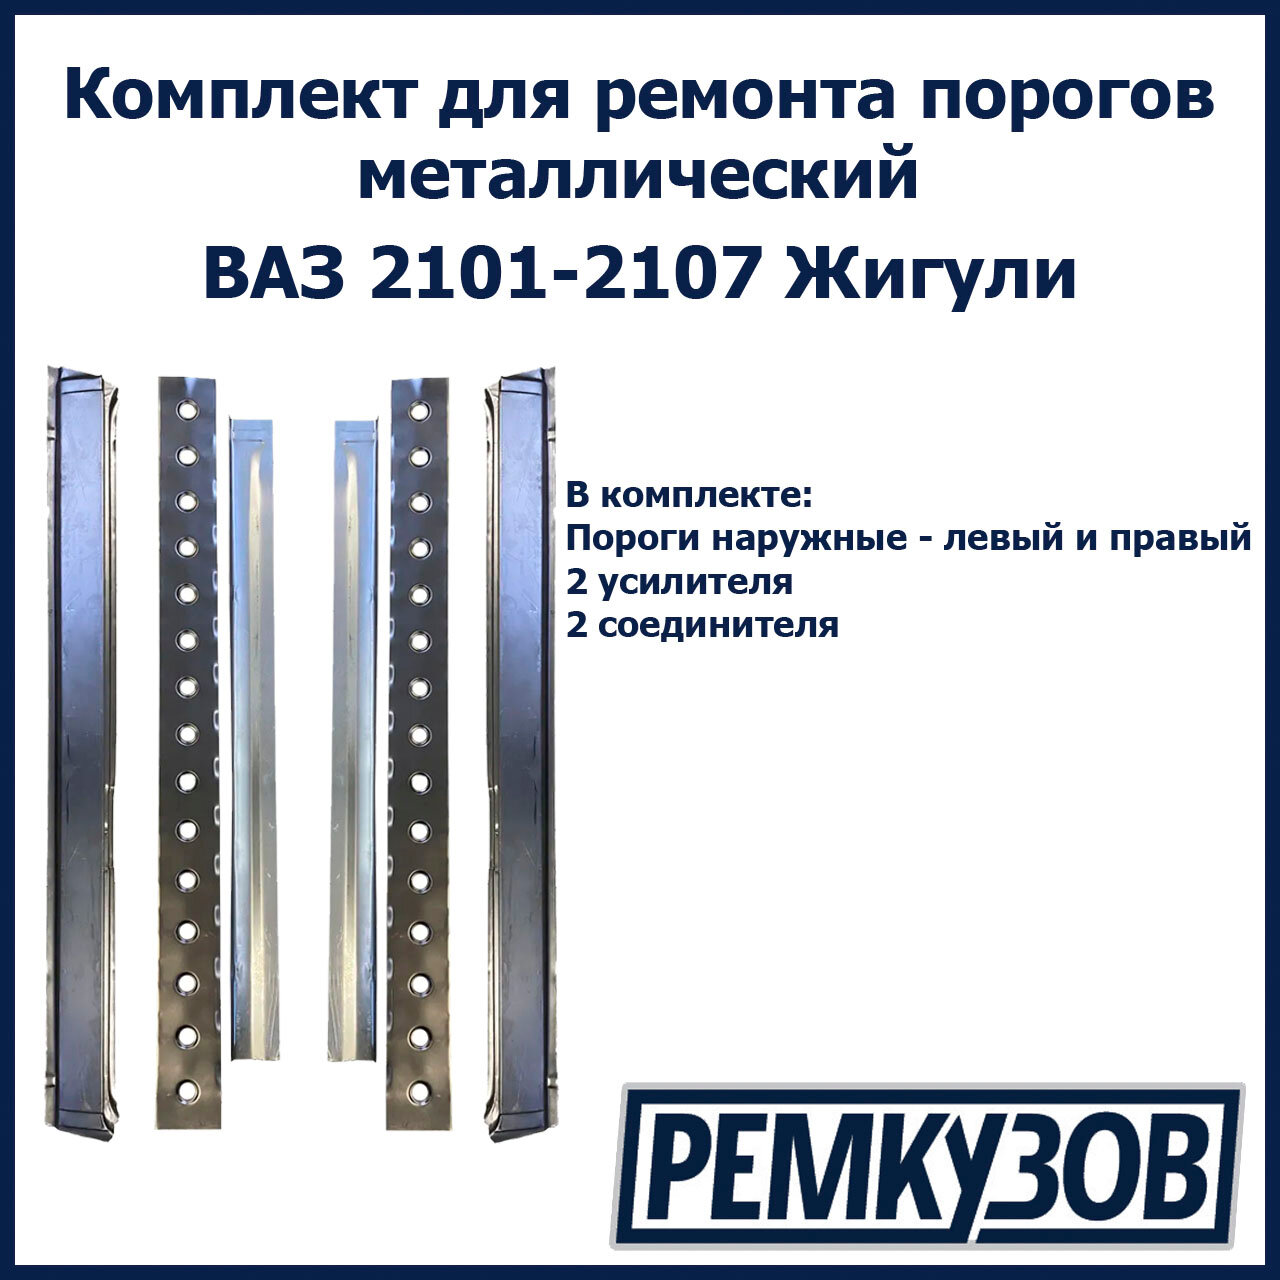 Комплект для ремонта порогов Жигули металл (ВАЗ 2101-2107) (Пороги наружные + Усилители + Соединители)